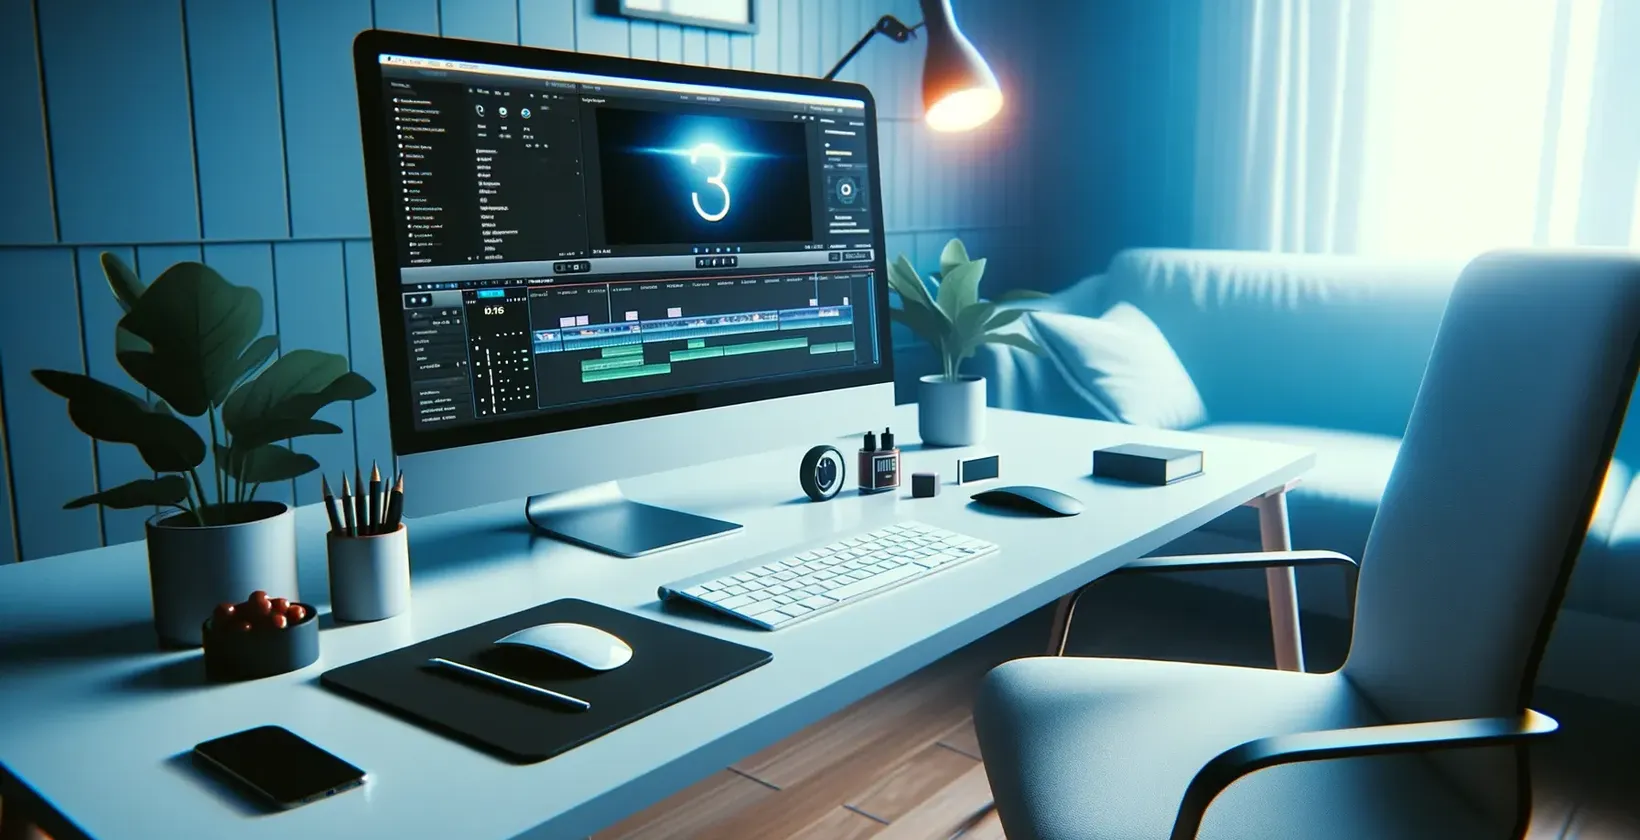 Stazione di editing illuminata di blu; sullo schermo vengono visualizzati l'onda sonora 3D e i simboli multimediali.